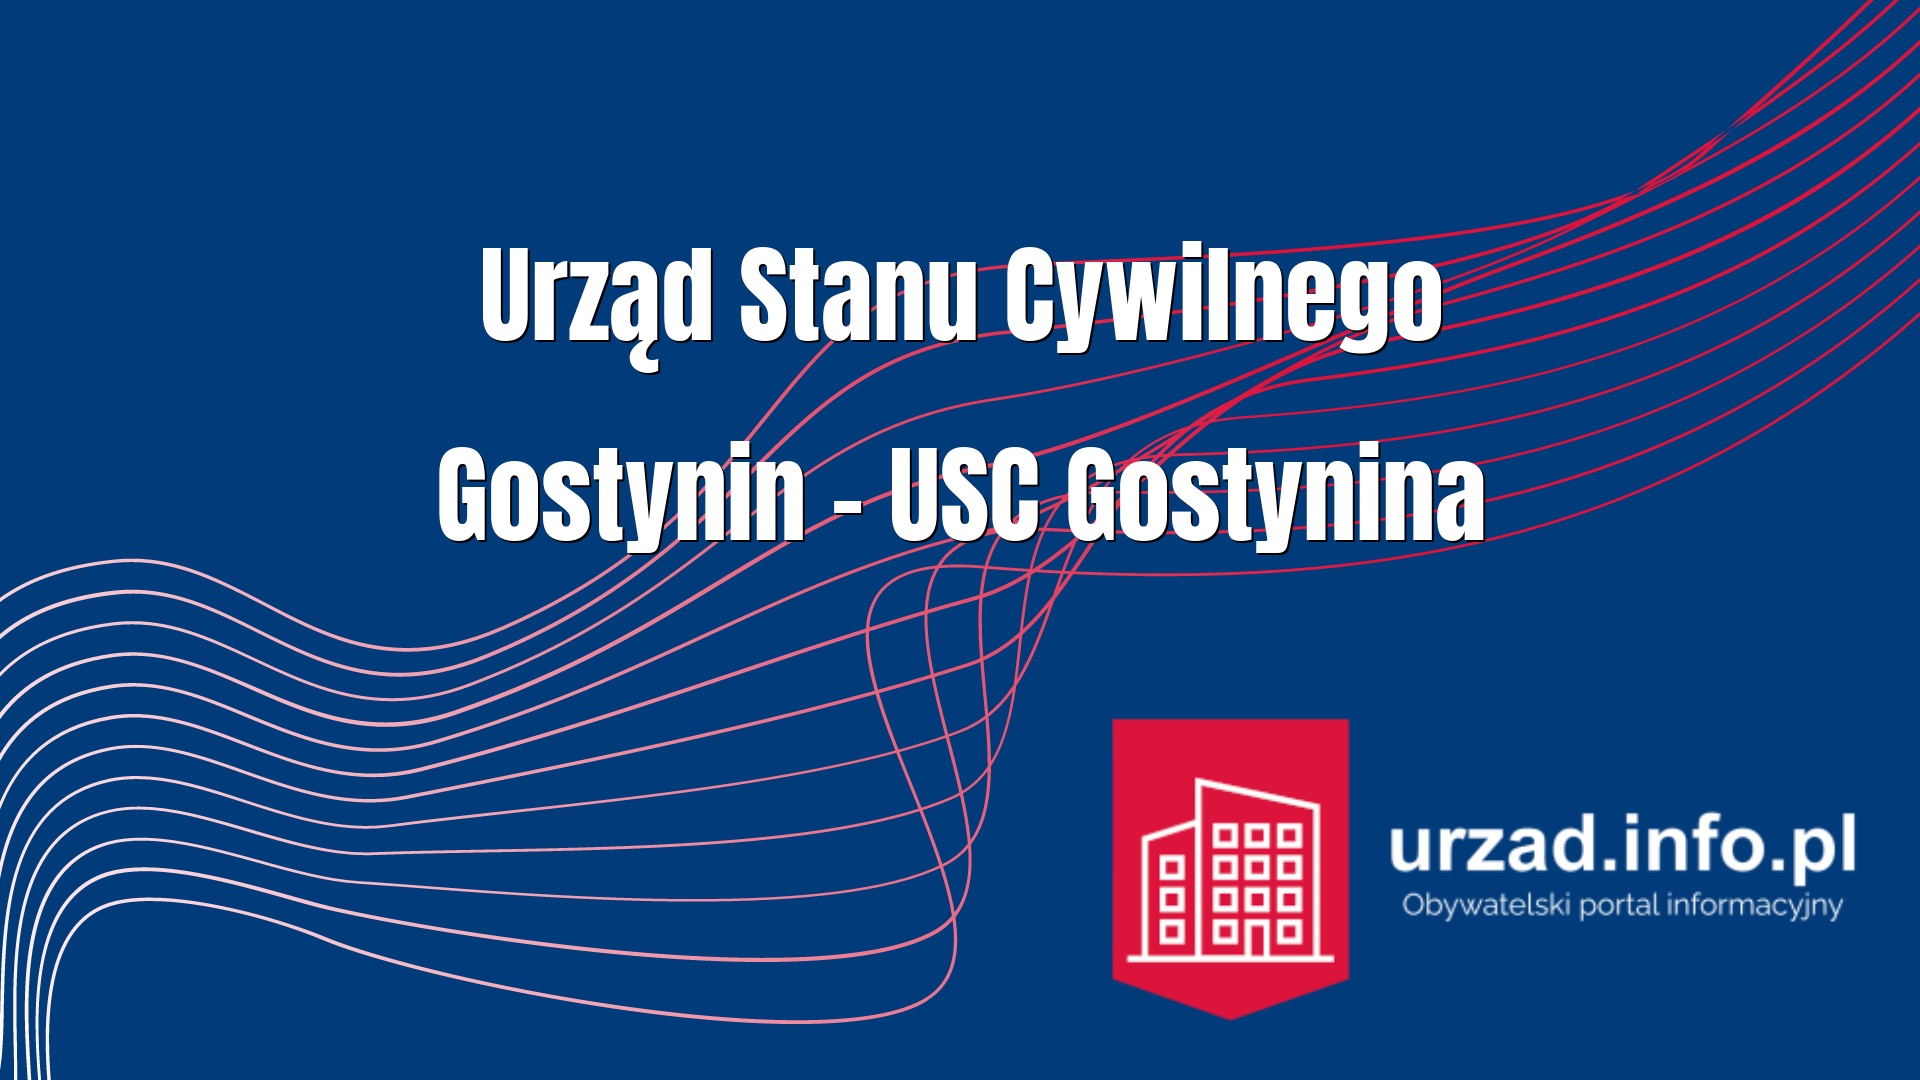 Urząd Stanu Cywilnego Gostynin – USC Gostynina